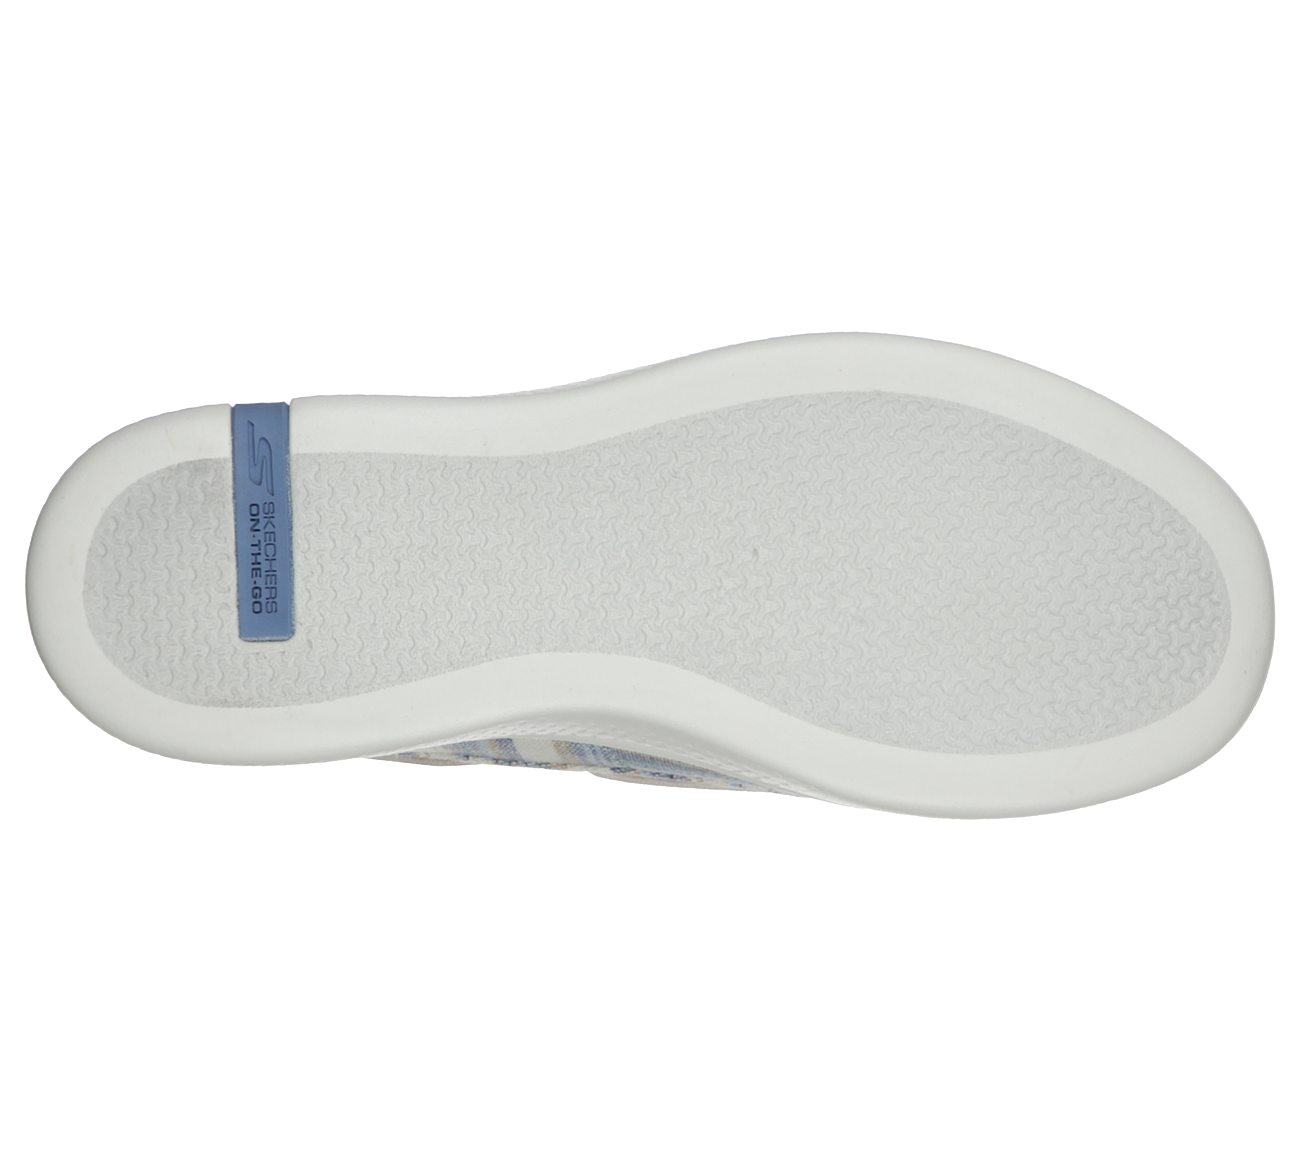 GLIDE ULTRA - SEASHORE, BLUE/MULTI Footwear Bottom View